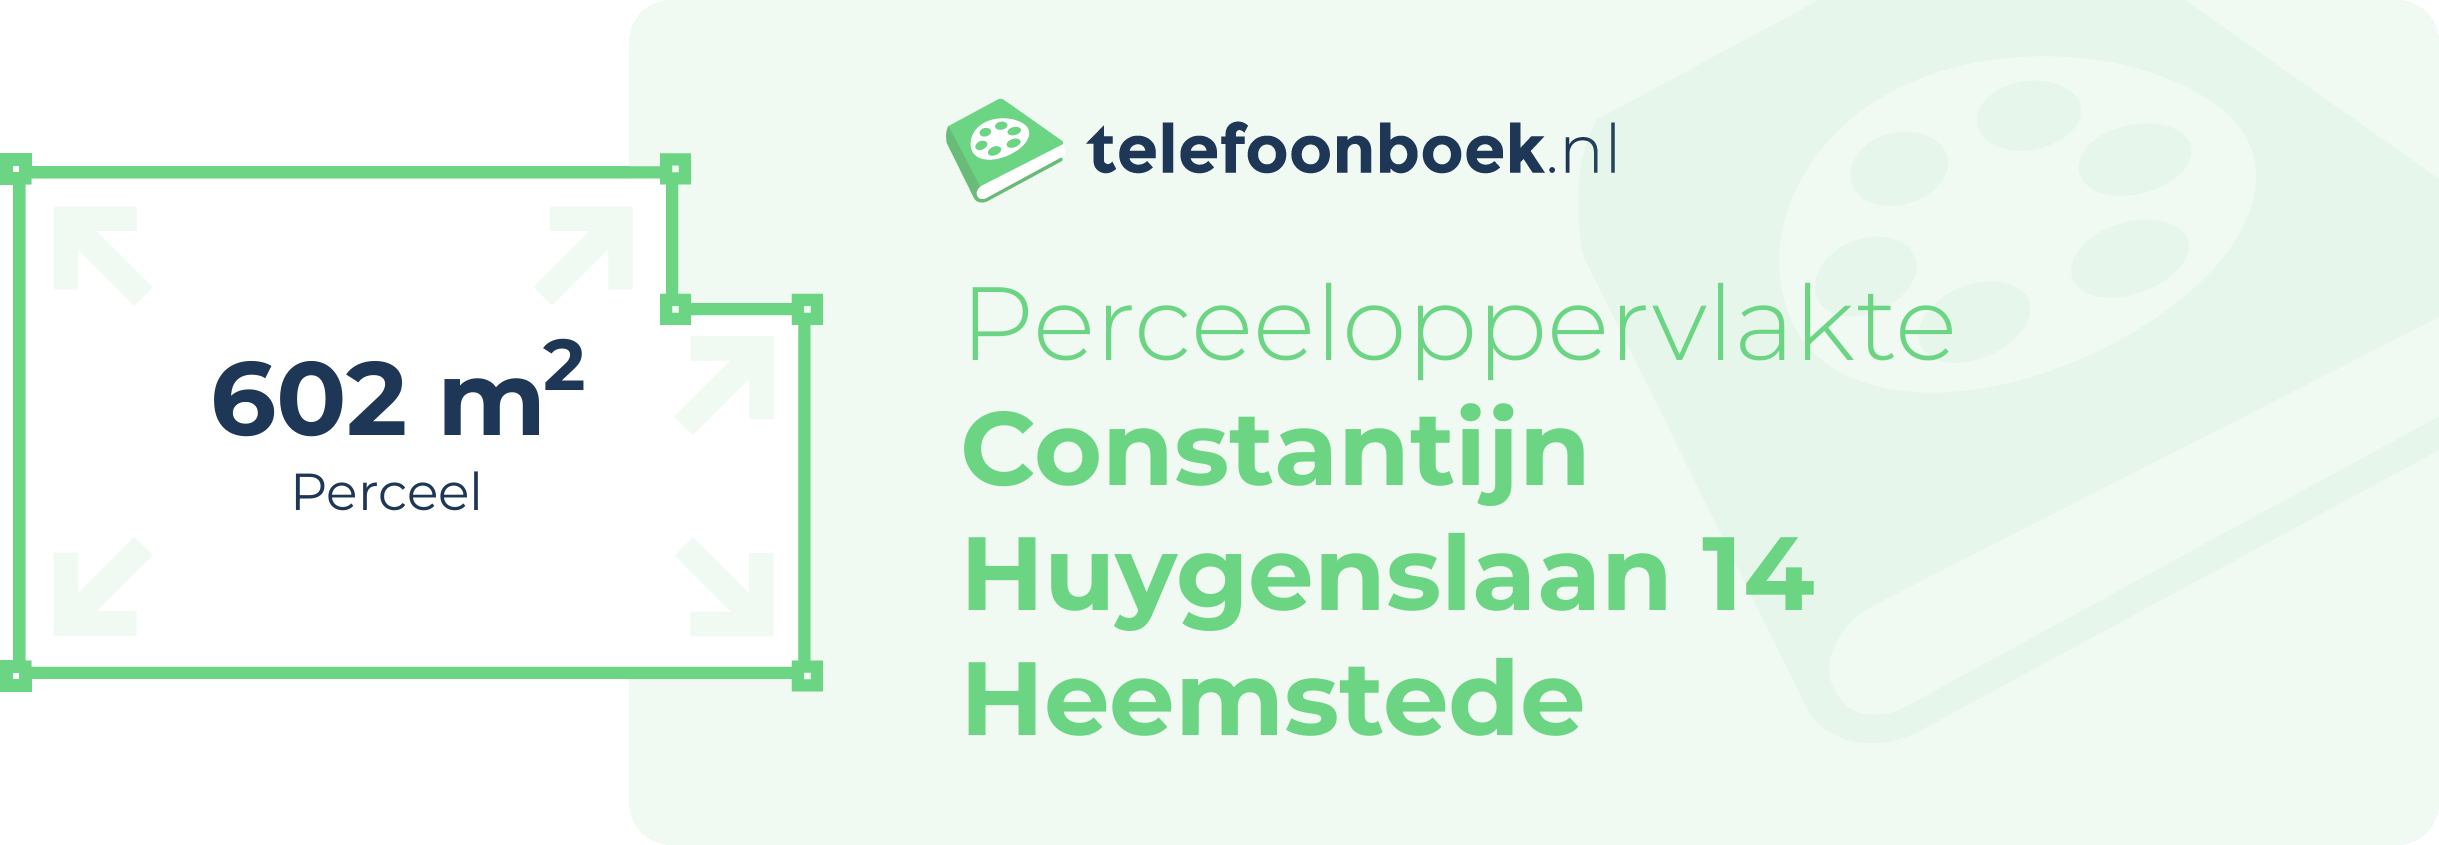 Perceeloppervlakte Constantijn Huygenslaan 14 Heemstede